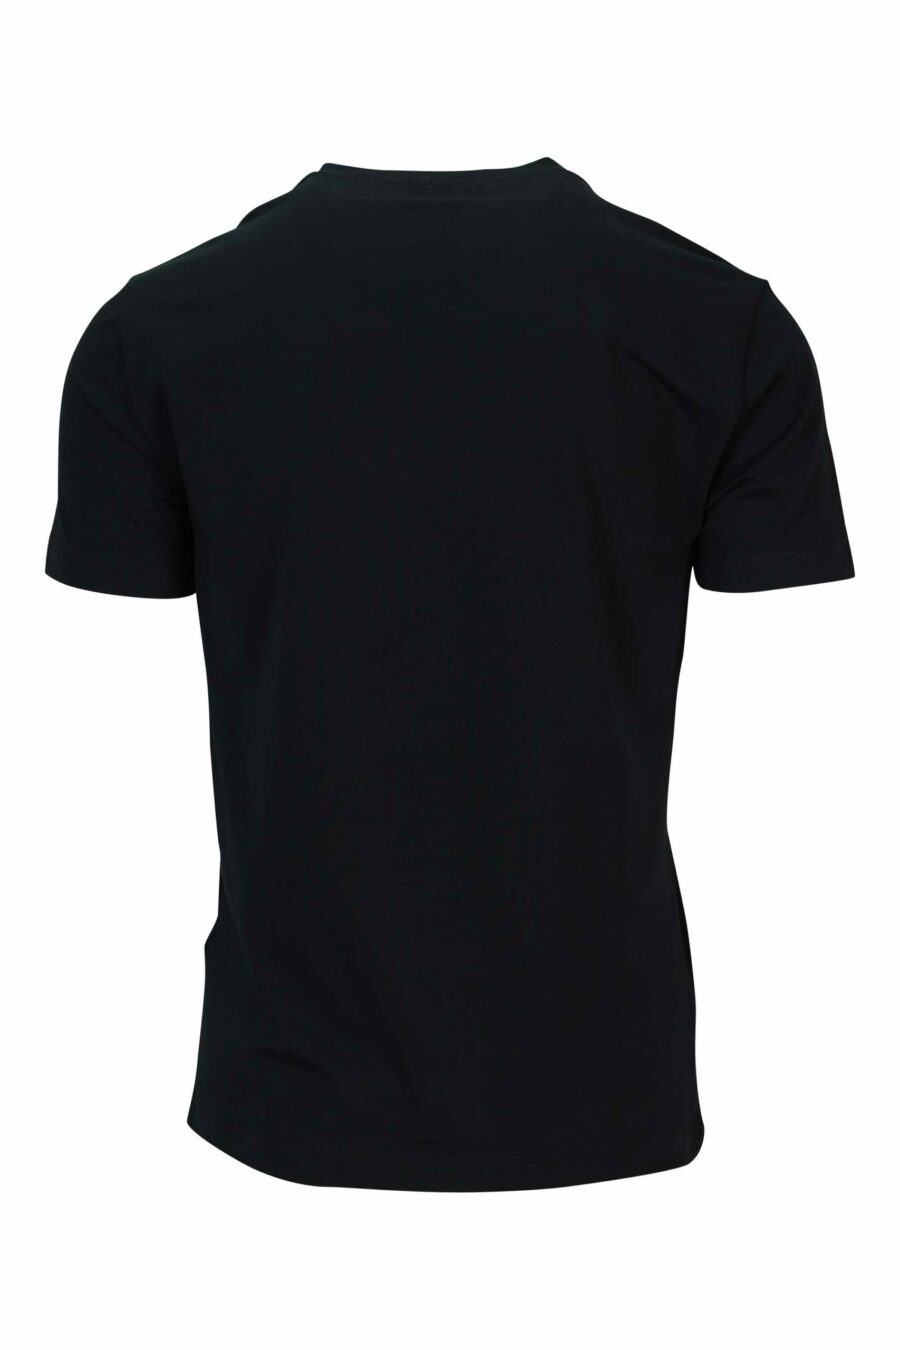 T-shirt preta com maxilogo azul "lux identity" - 8058947491346 1 1 à escala